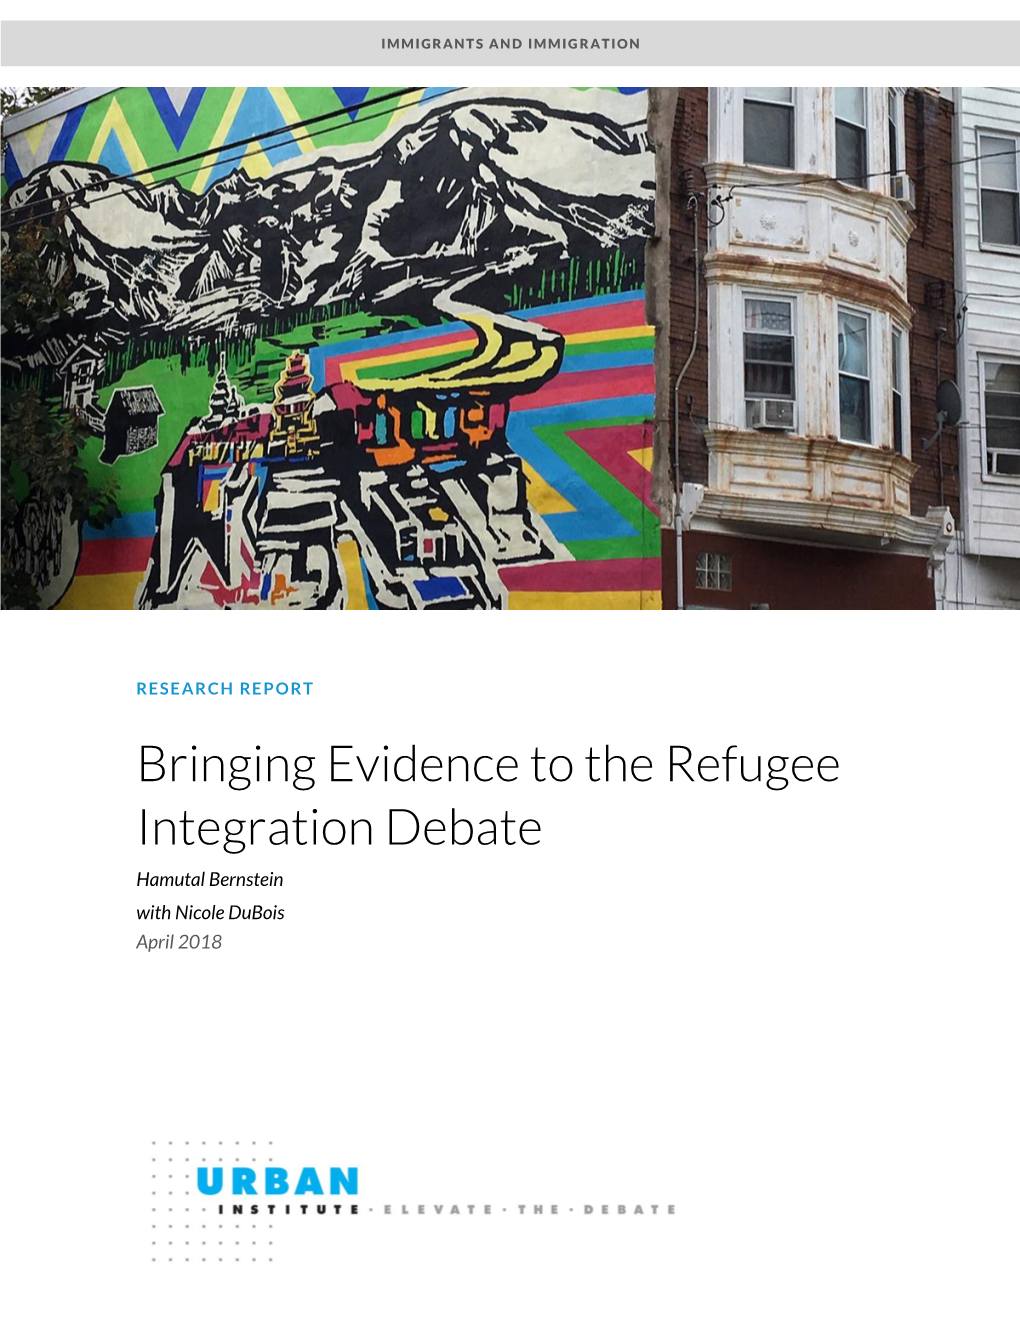 Bringing Evidence to the Refugee Integration Debate